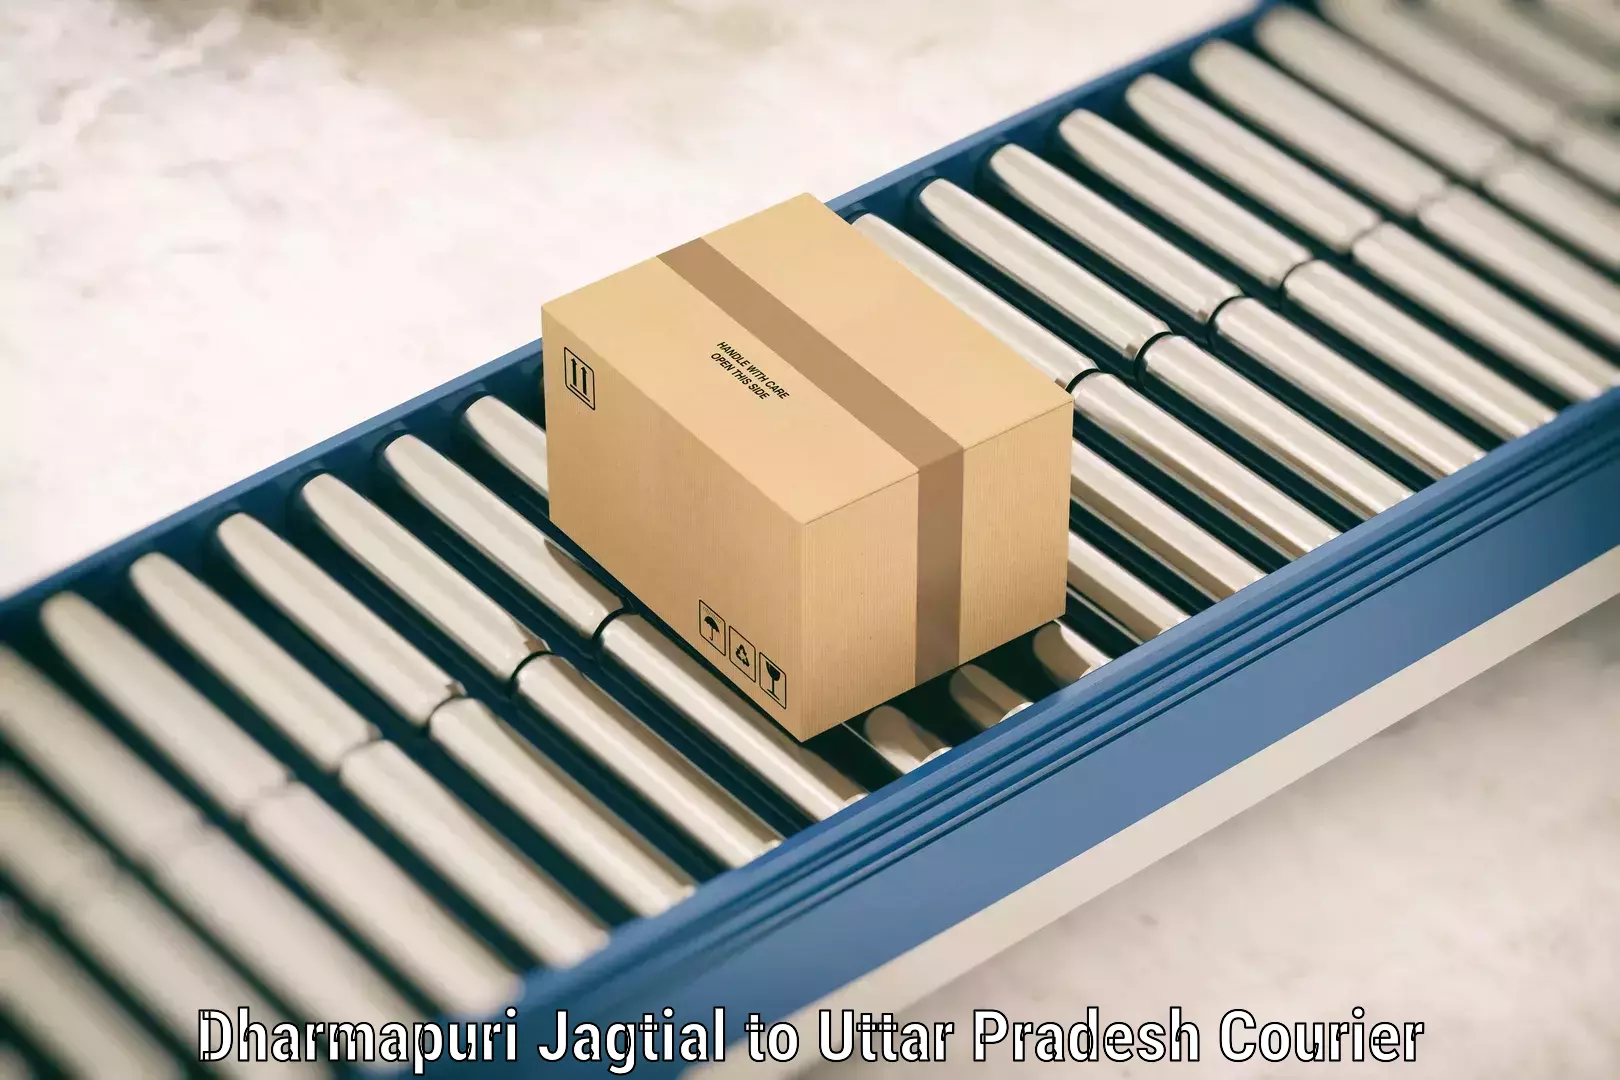 Luggage shipping efficiency Dharmapuri Jagtial to Aunrihar